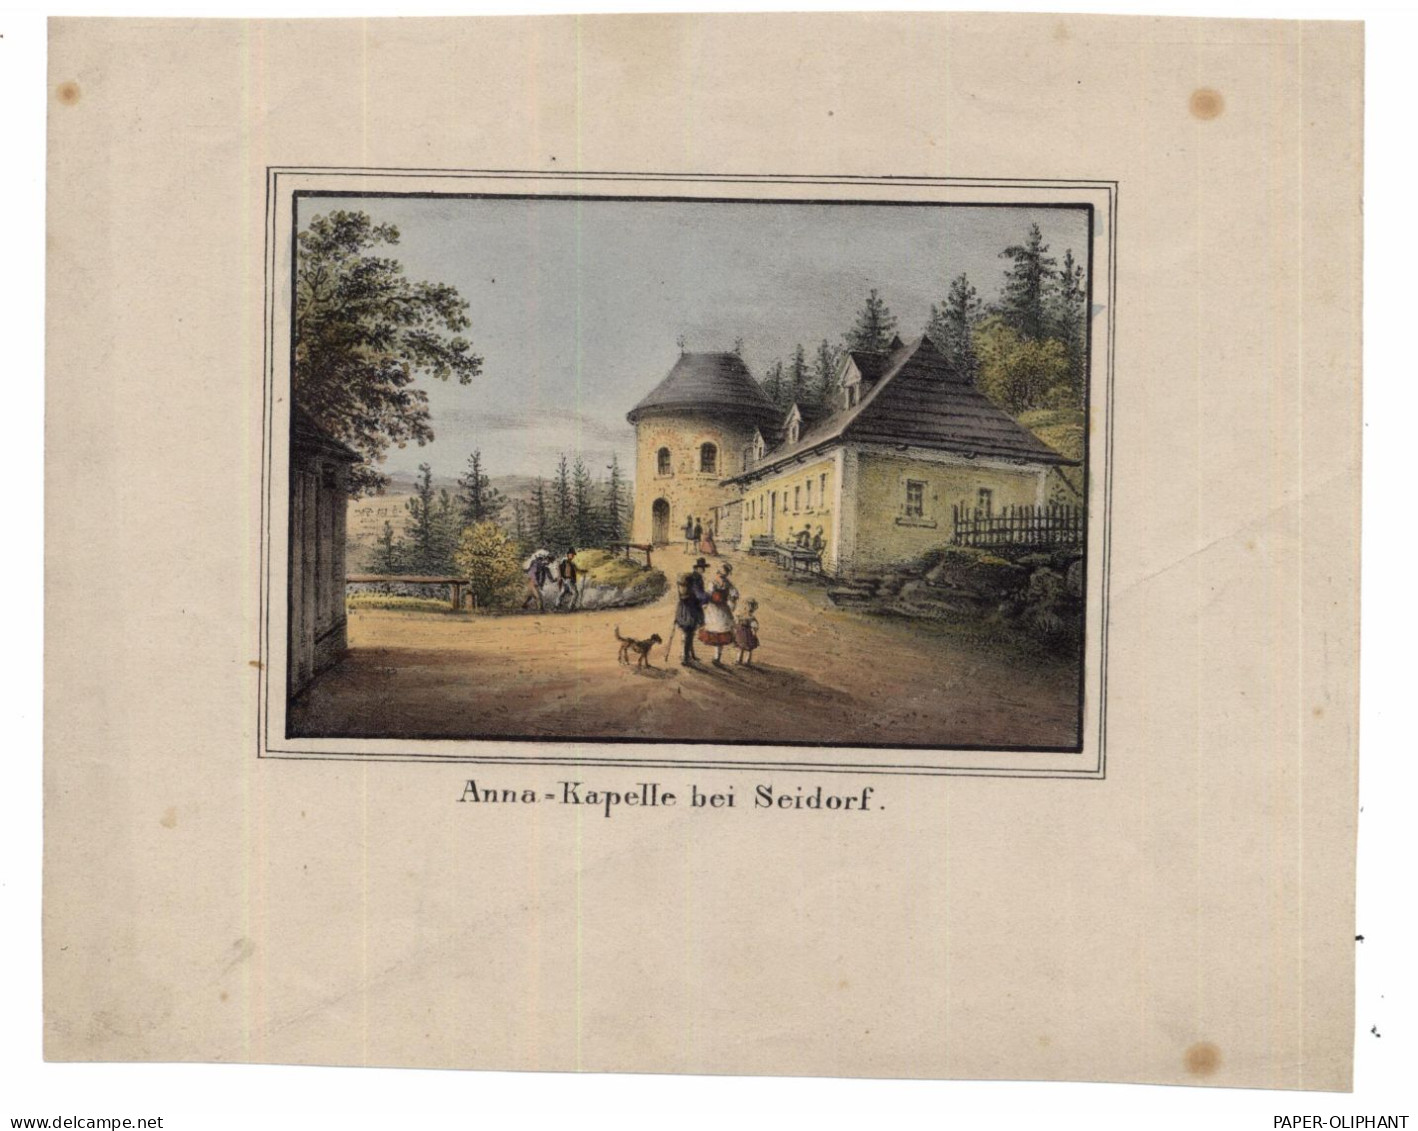 NIEDER - SCHLESIEN - SEIDORF / SOSNOWKA, St. Anna - Kapelle, Kolorierter Kupferstich, 18 X 14,5 Cm, Ca. 1850 - Schlesien